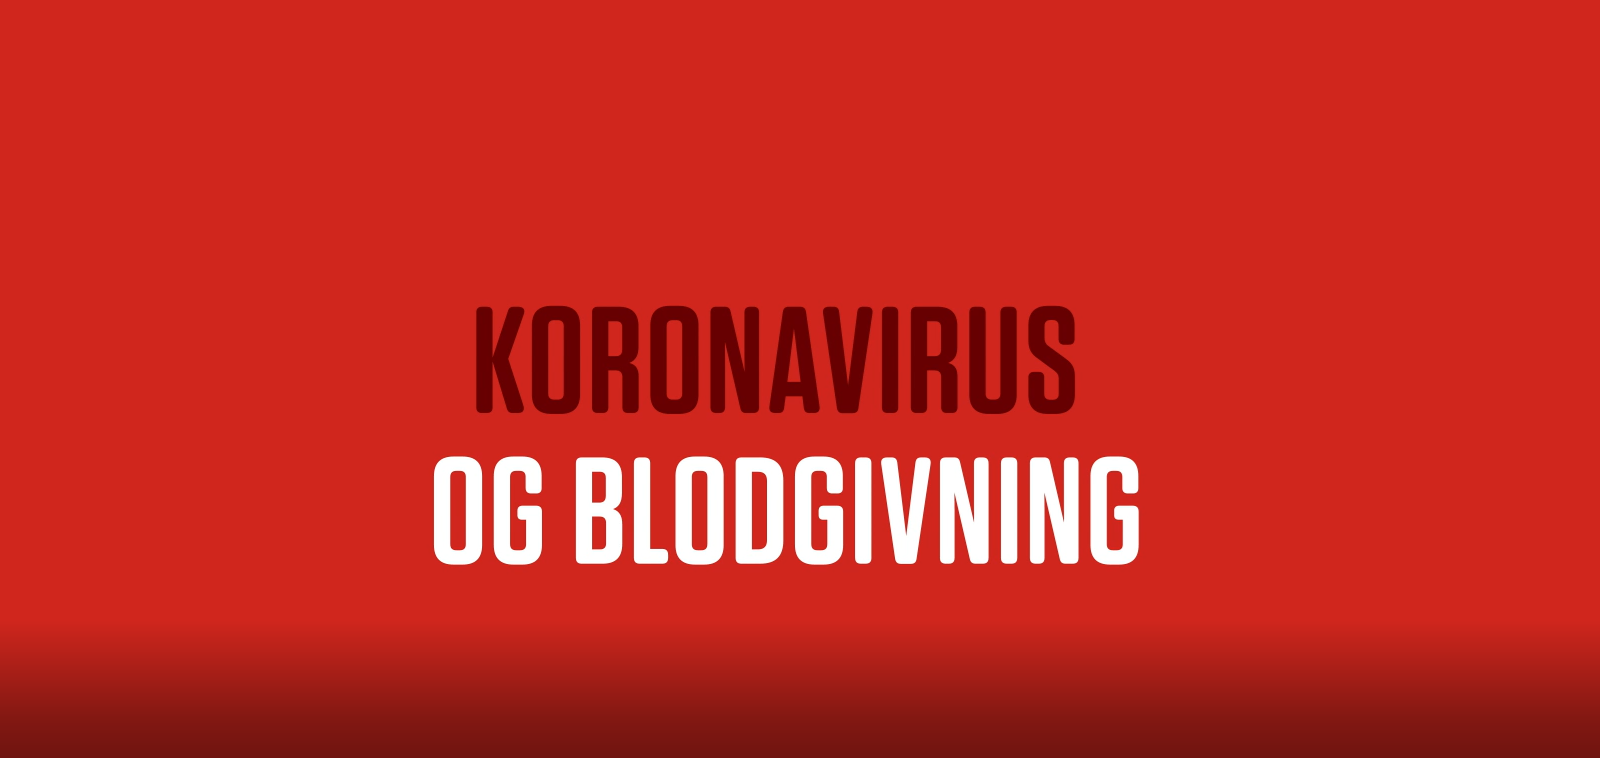 Koronavirus og blodgivning